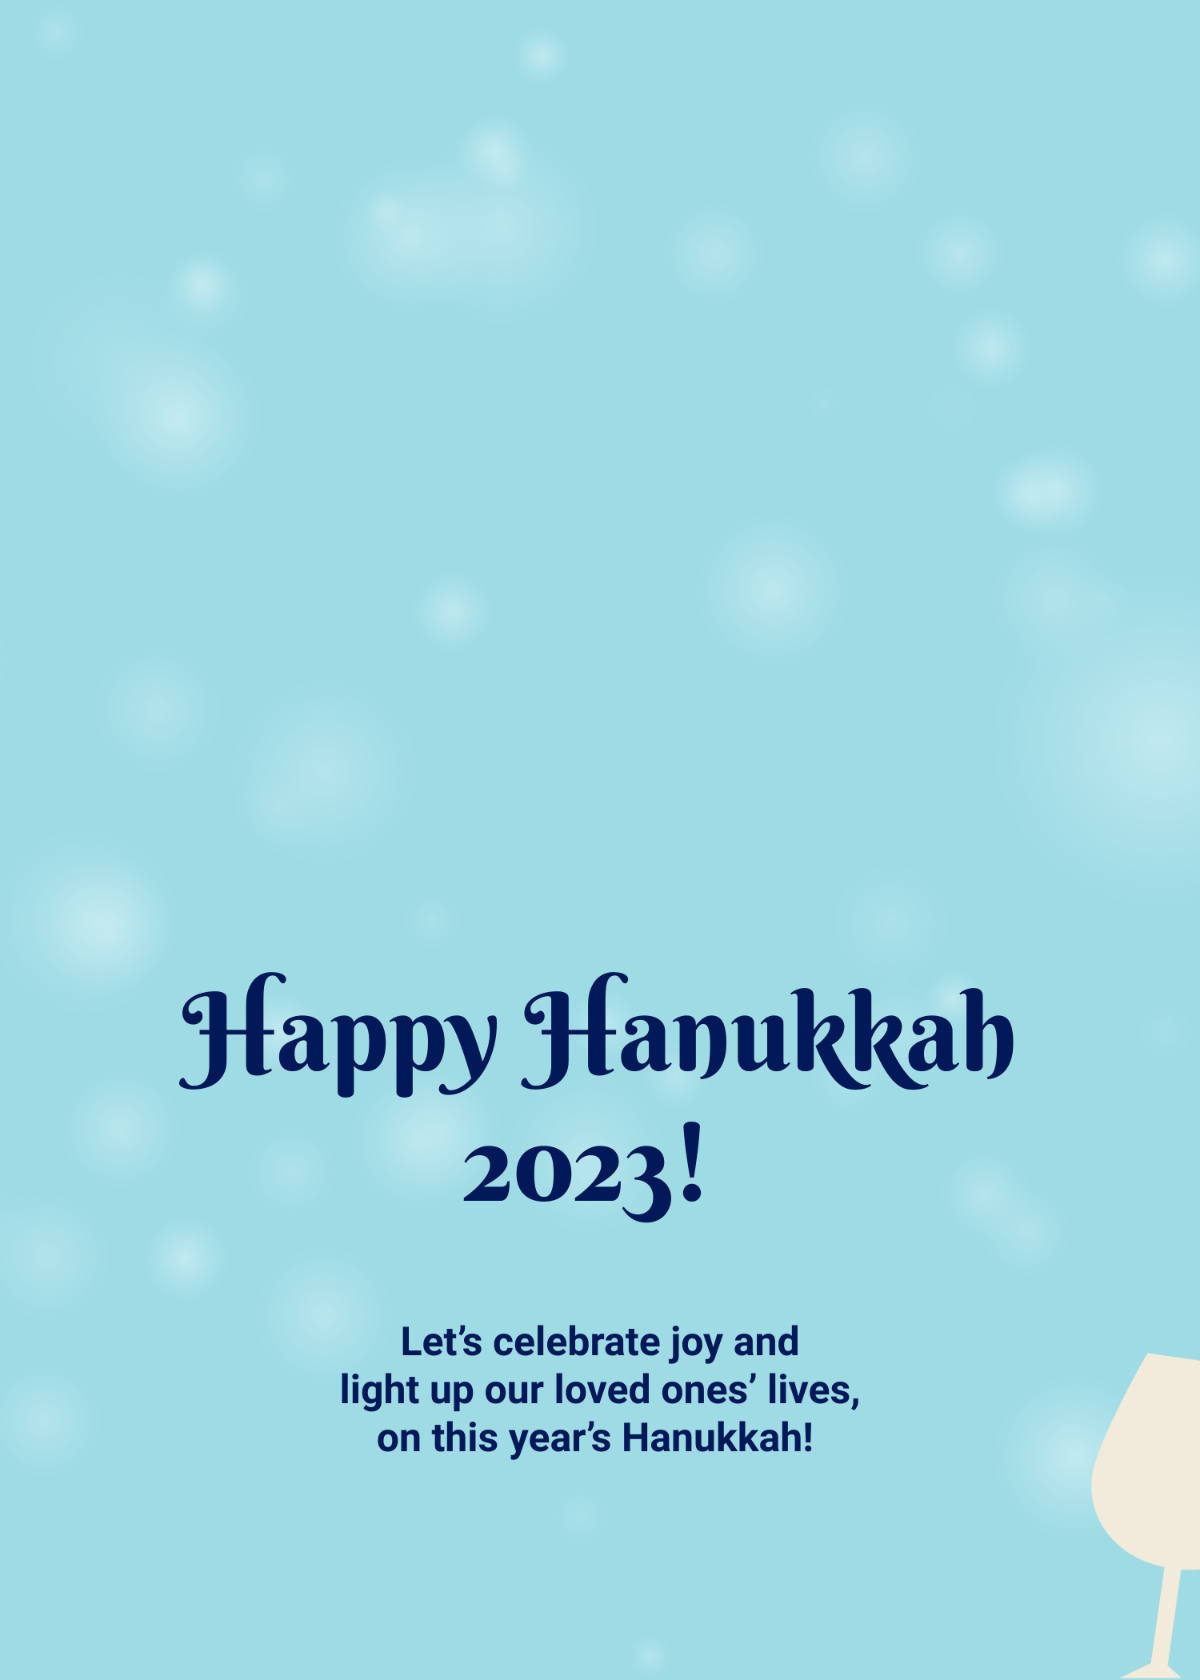 Hanukkah 2023 Greeting Template